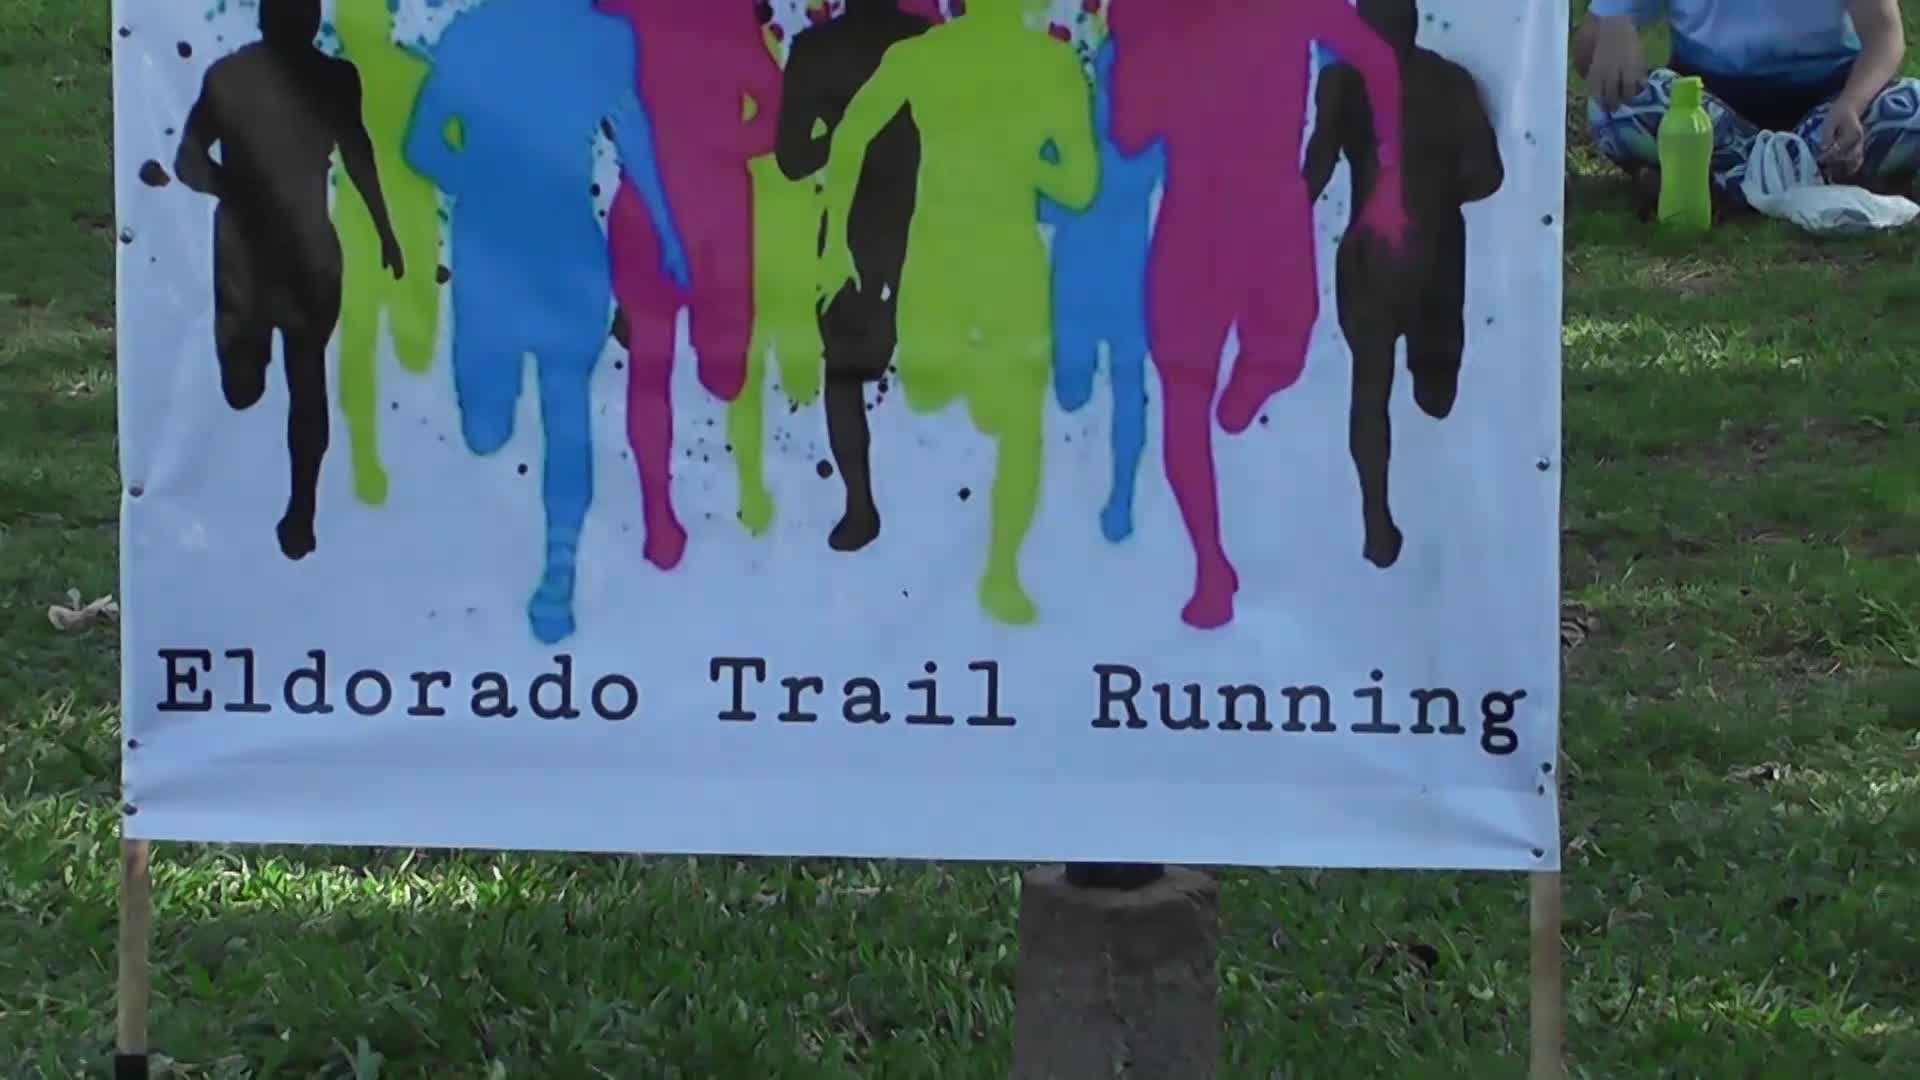 Running: corriendo y brindando un servicio que asienta una nueva cultura